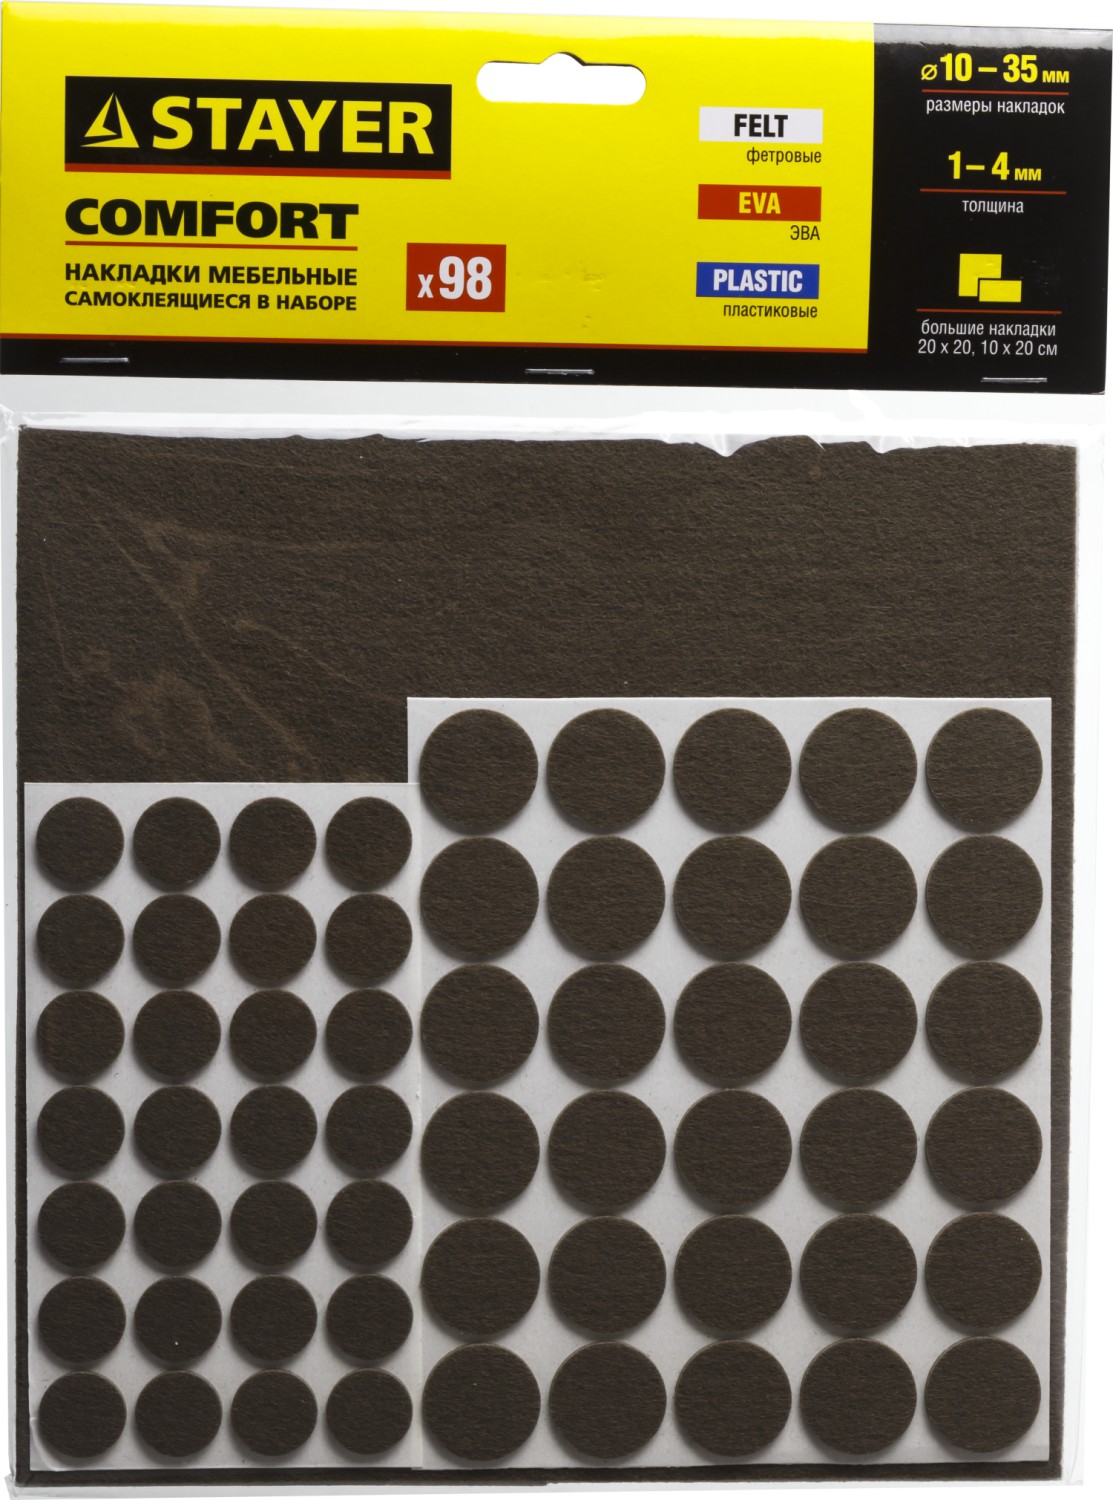 STAYER коричневые, самоклеящиеся, 98 шт, набор мебельных накладок (40916-H98)